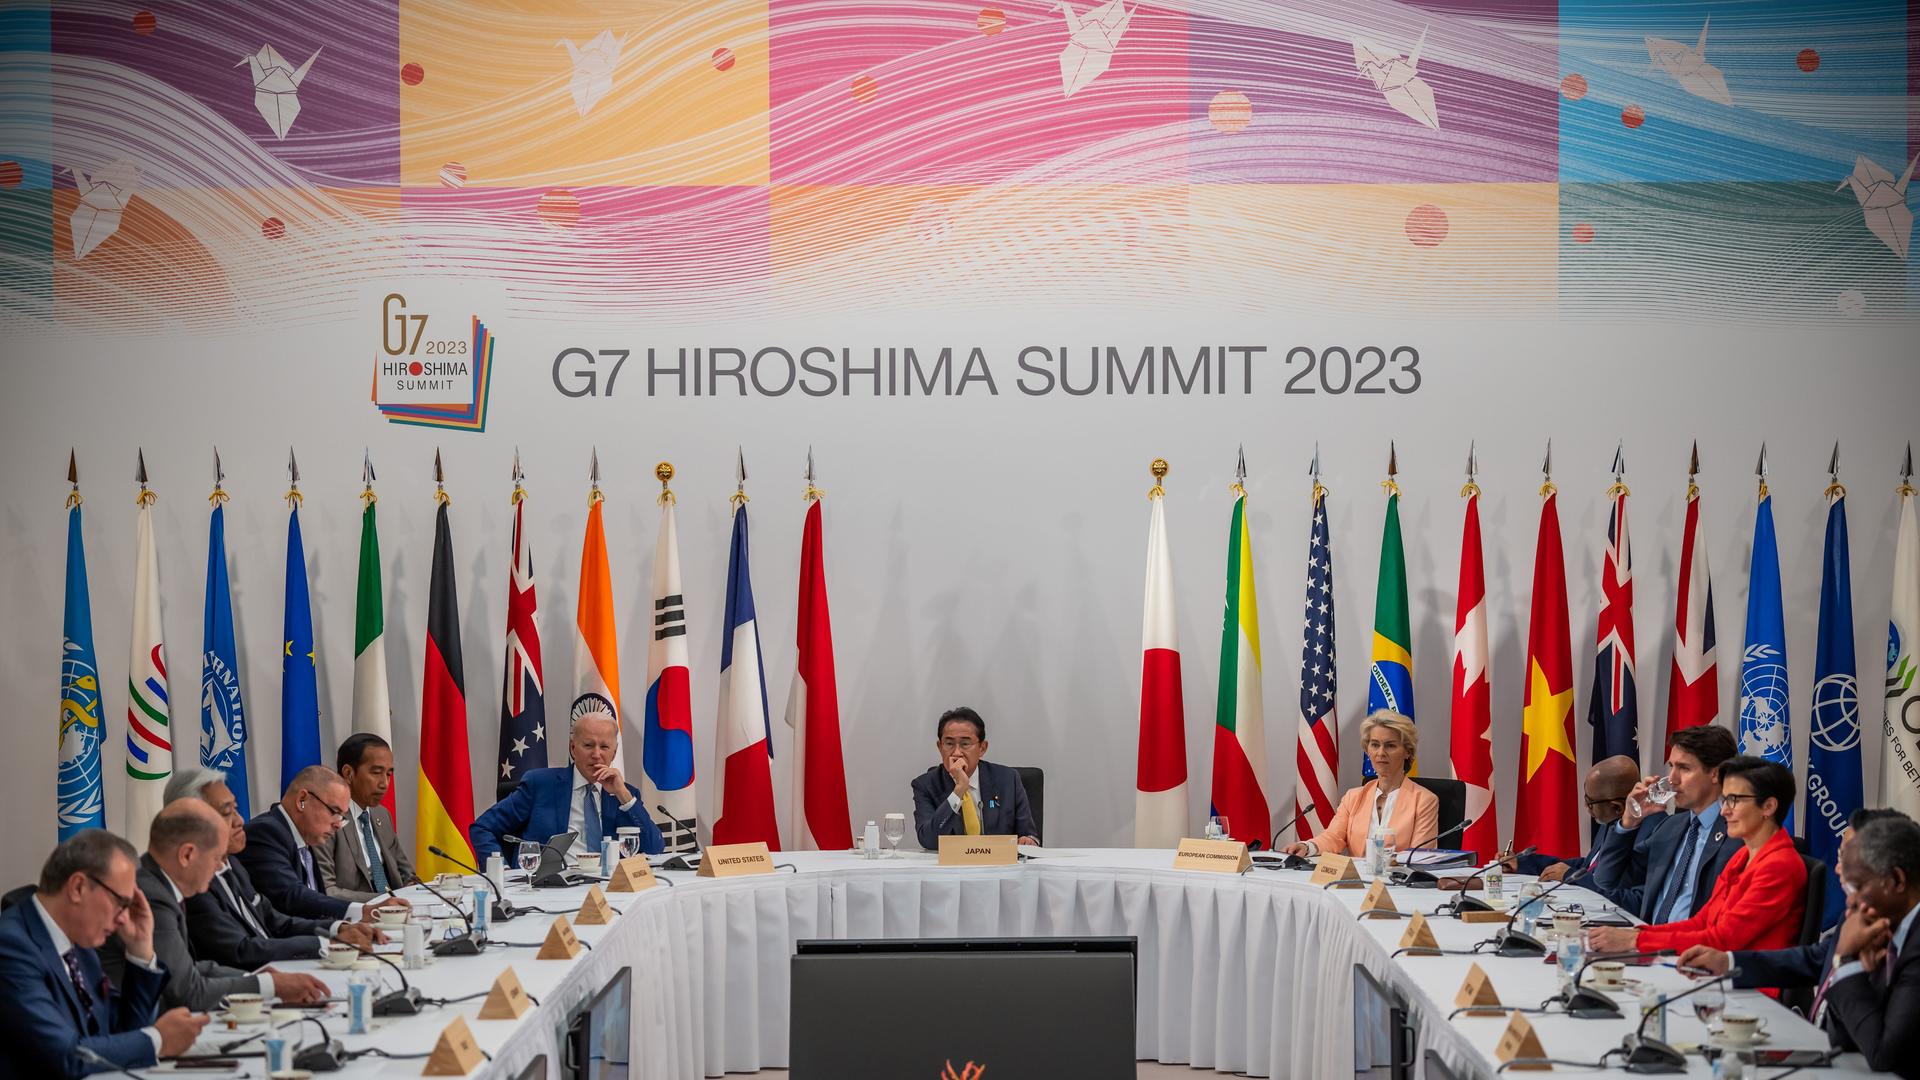 Zu sehen sind die Teilnehmer des G7-Gipfels in Hiroshima. In der Mitte Japans Ministerpräsidentn Kishida.